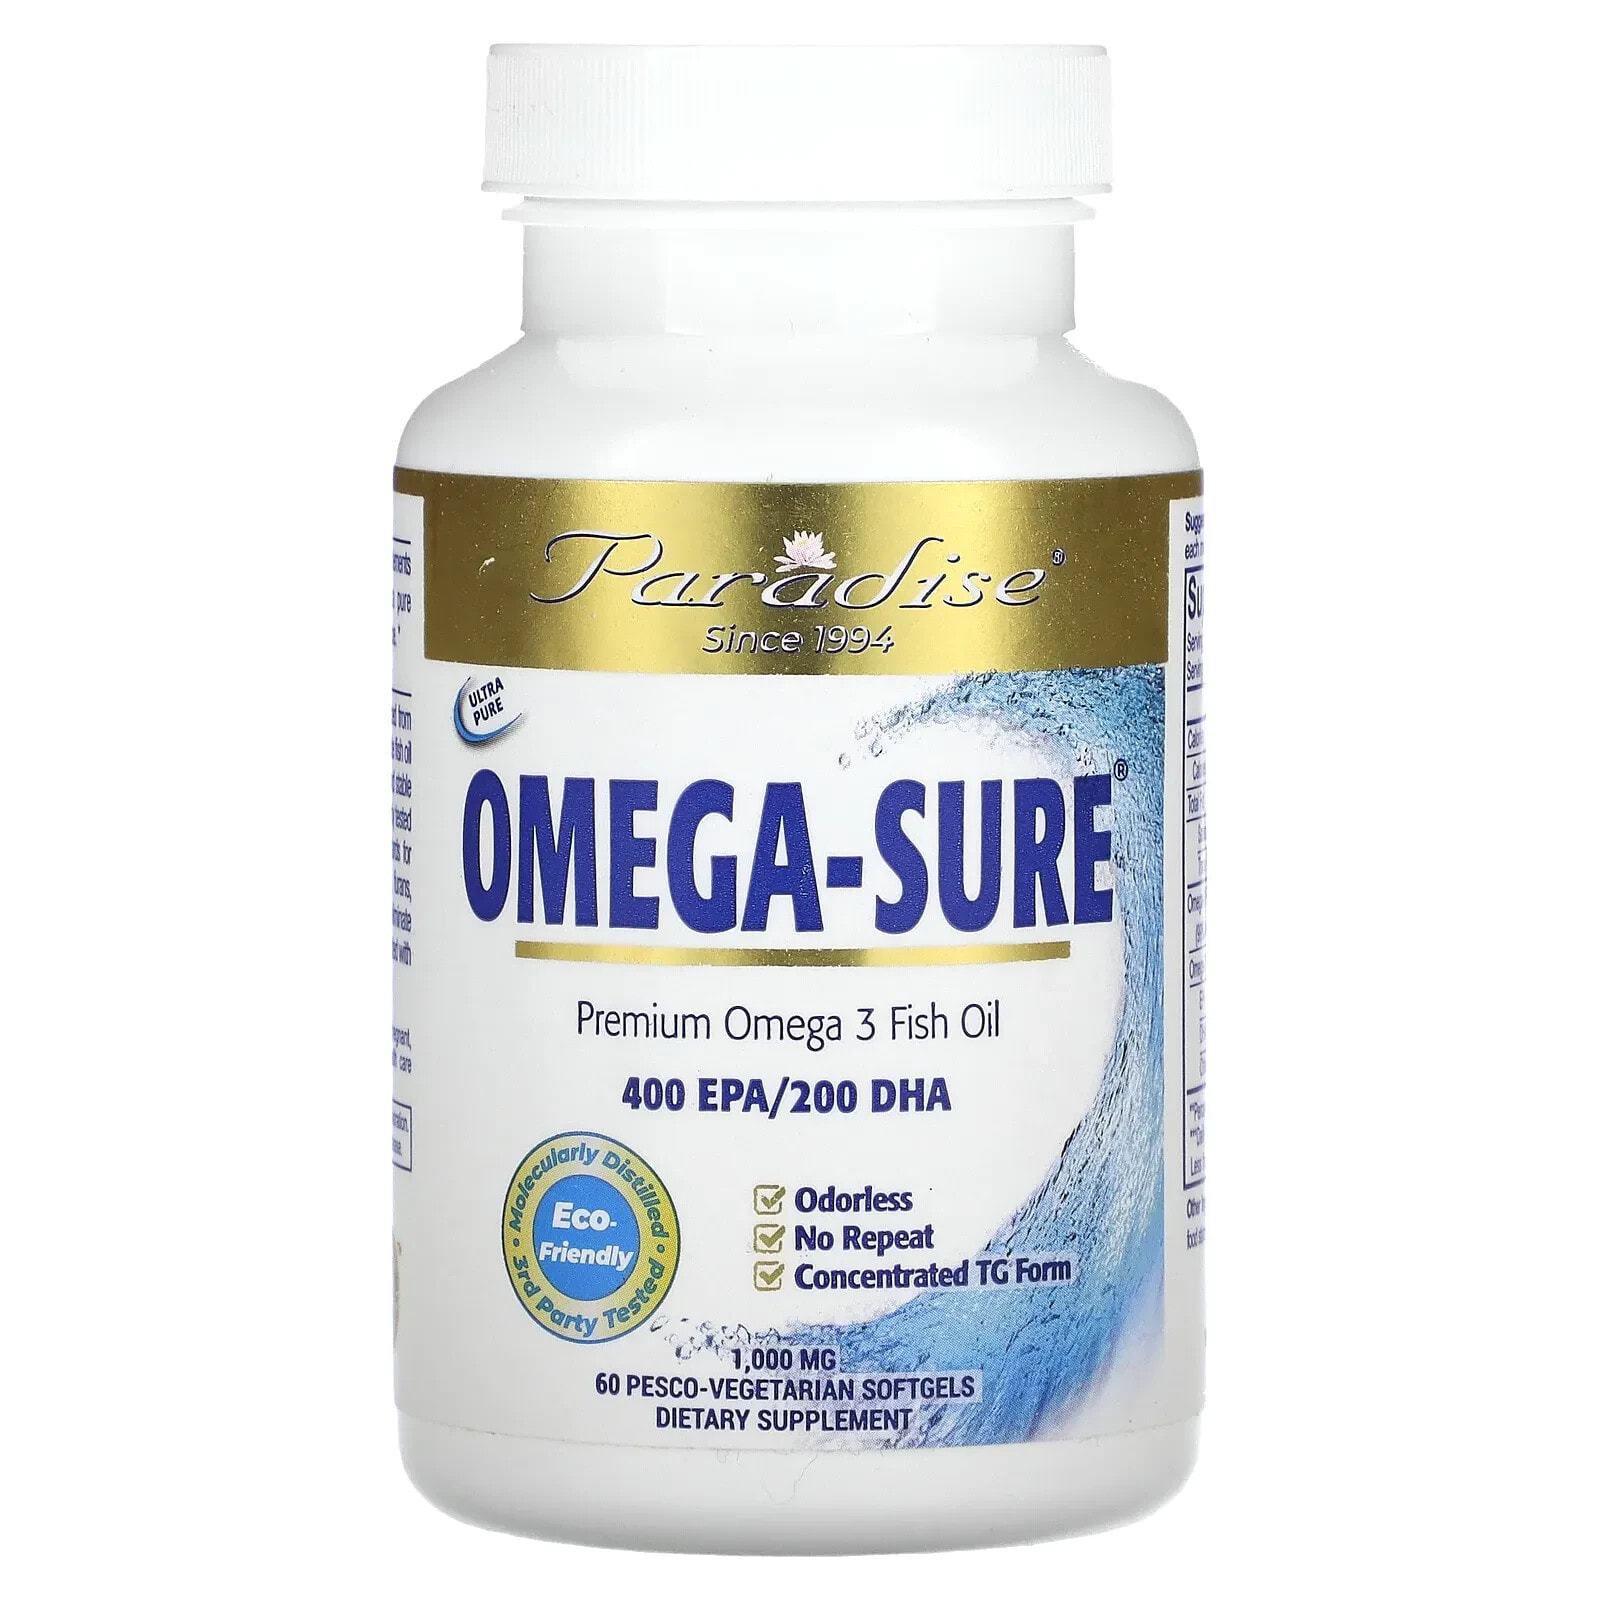 Парадайз Хербс, Omega Sure, концентрат омега-3, 1000 мг, 30 капсул в растительной оболочке Pesco